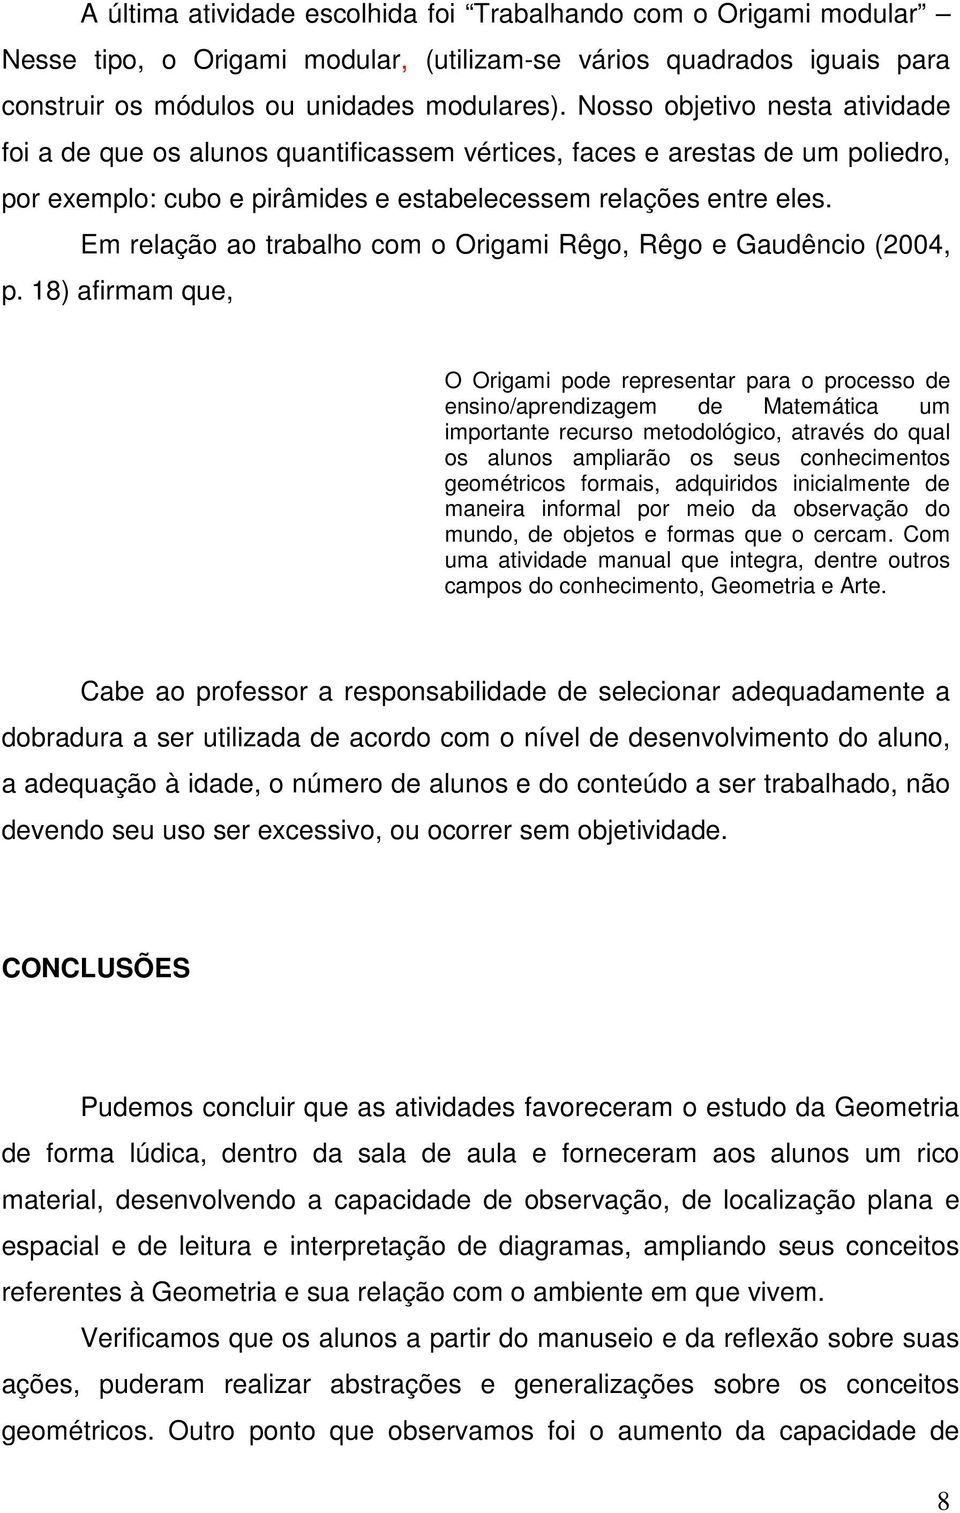 Em relação ao trabalho com o Origami Rêgo, Rêgo e Gaudêncio (2004, p.